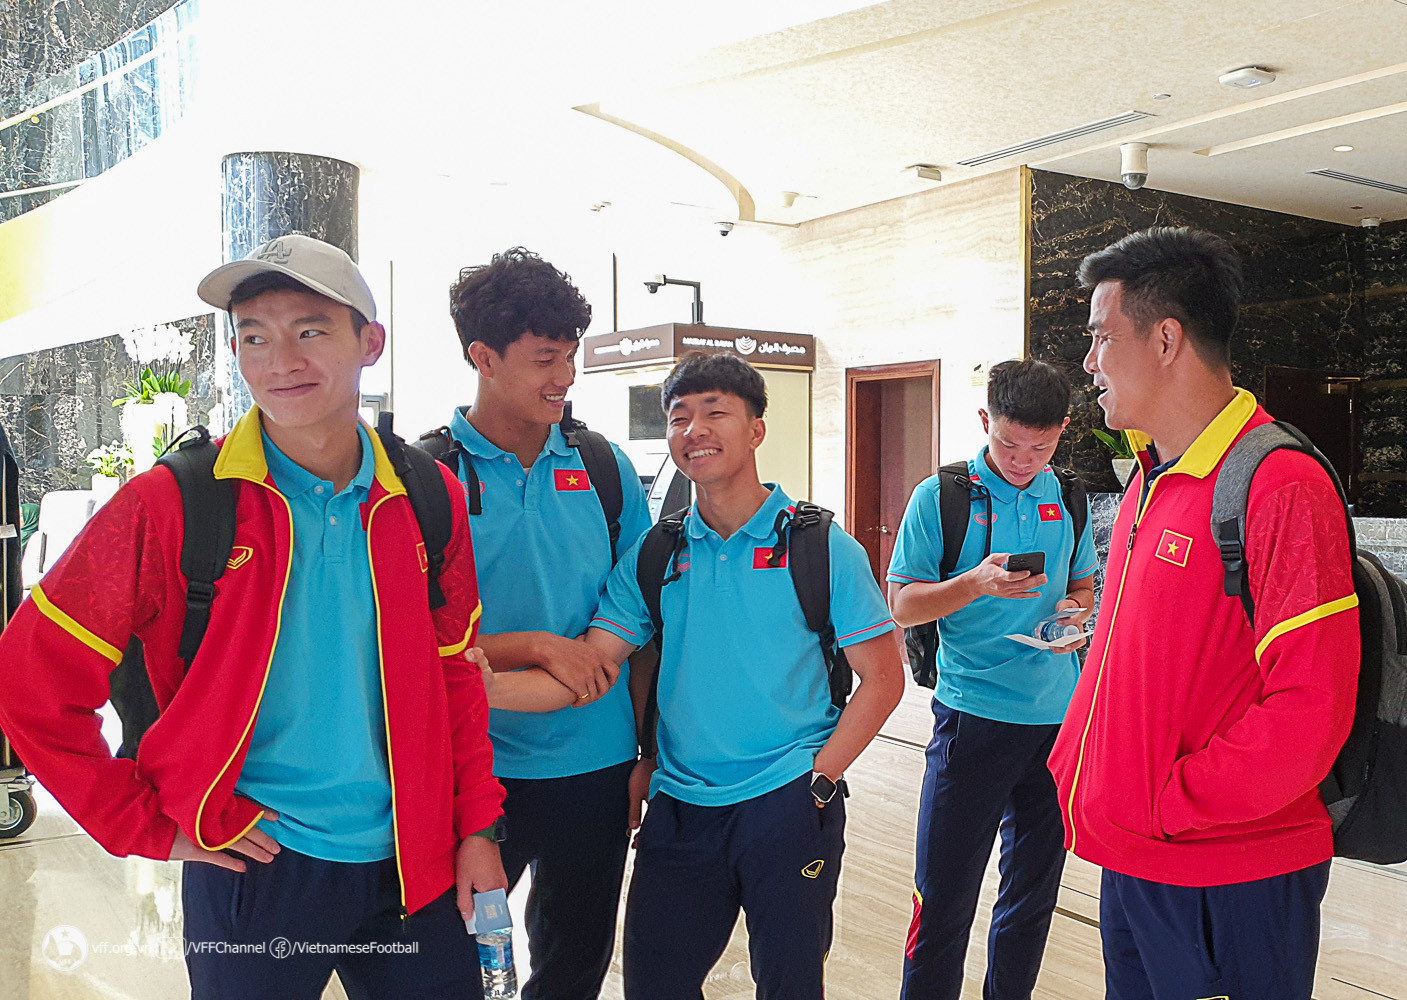 U23 Việt Nam đóng quân tại khách sạn của tuyển Đức ở World Cup - Bóng Đá